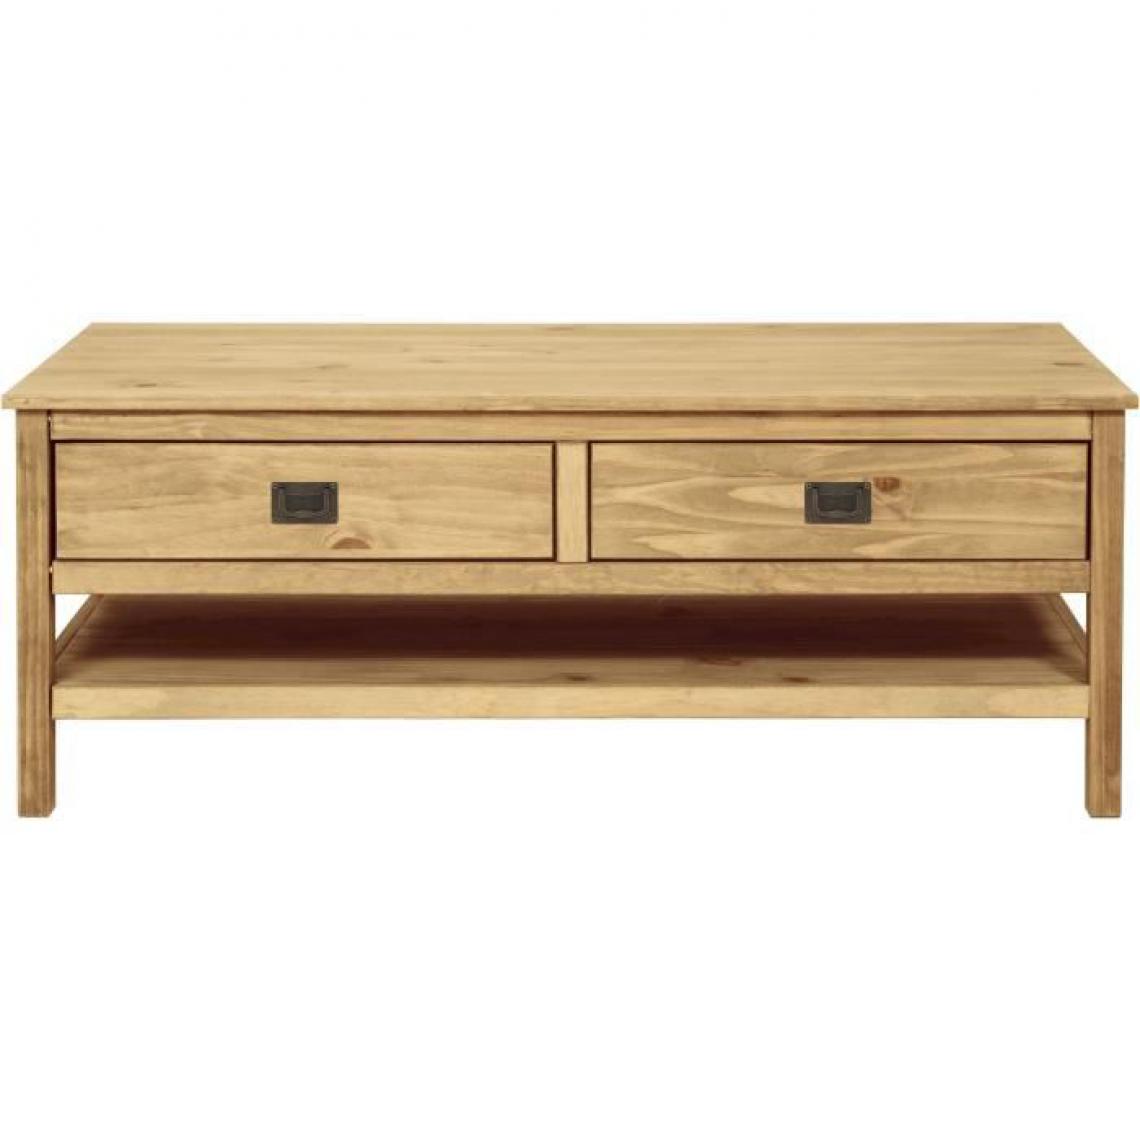 Cstore - Table basse rectangulaire - En bois pin massif - Marron - 2 tiroirs + 1 étagère - L 140 x P 60 x H 54 cm - ESTEBAN - Tables basses